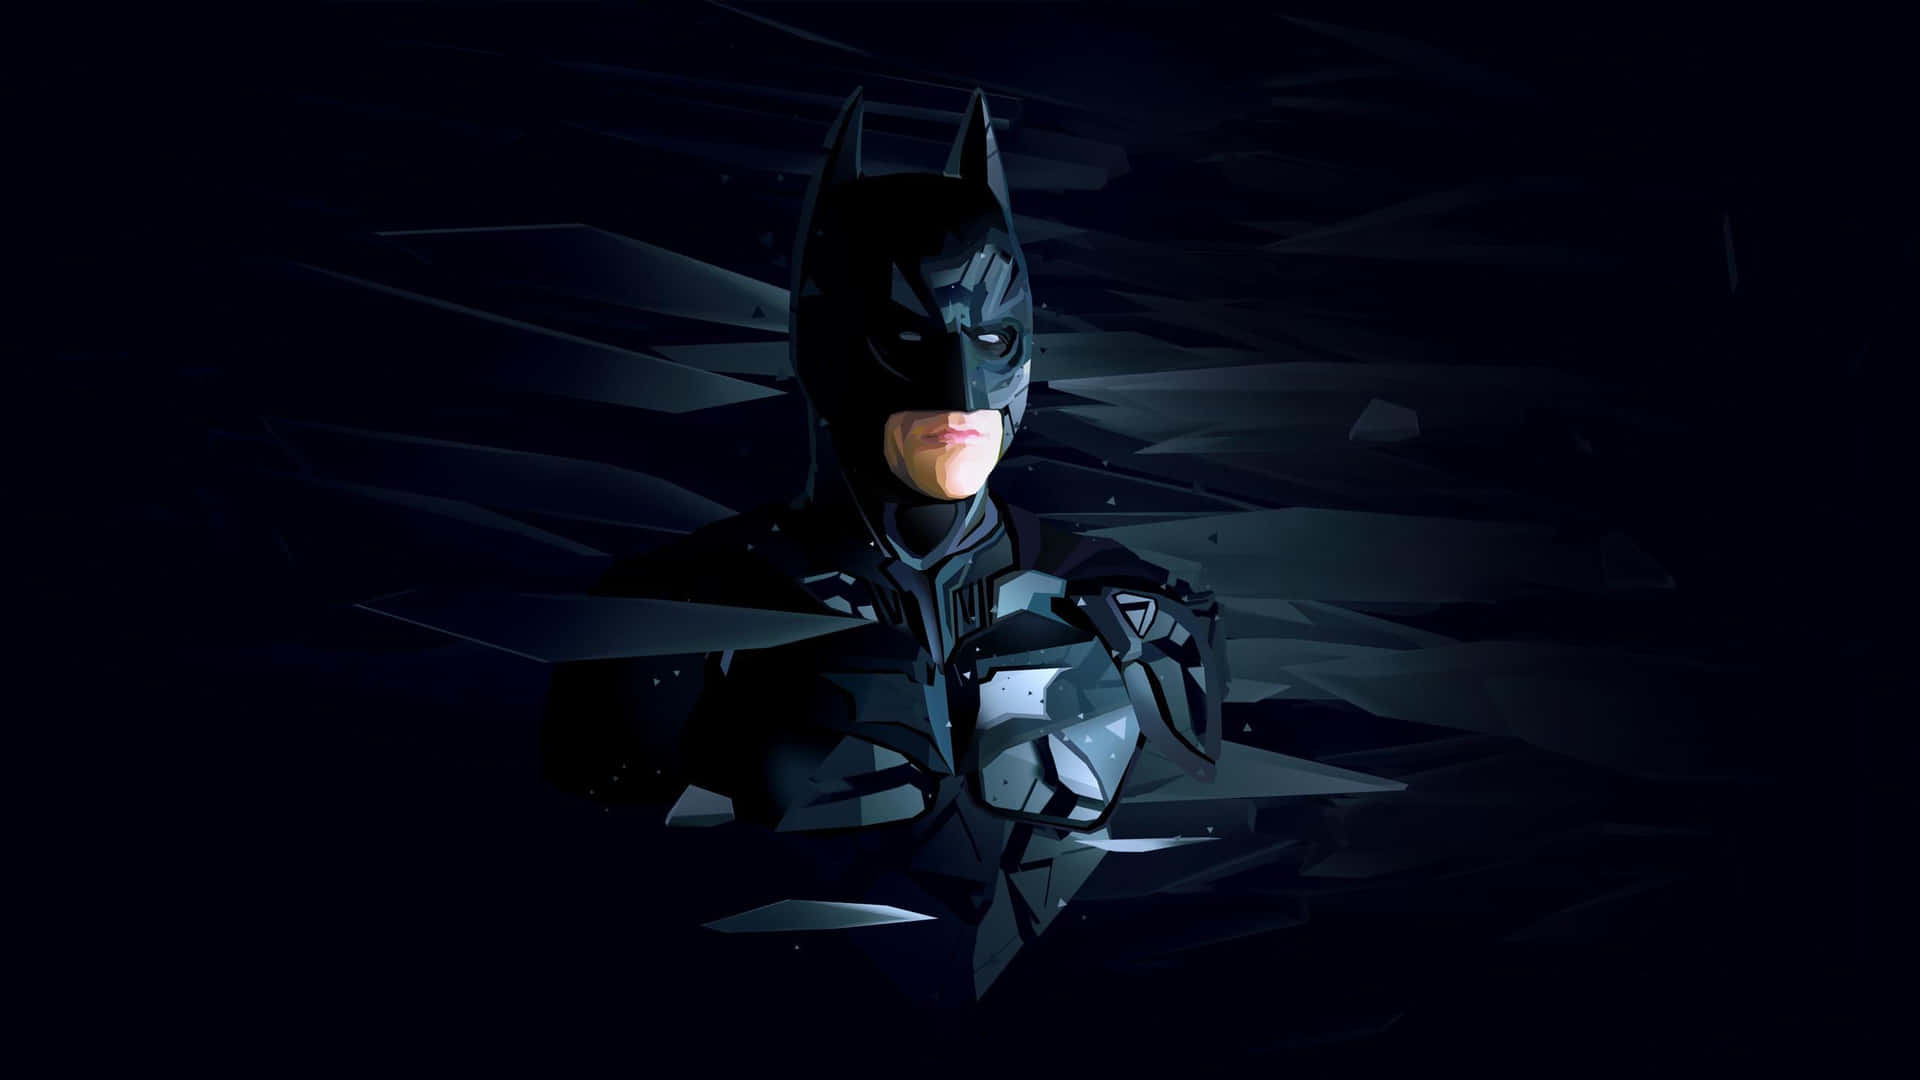 Batmansvæver Over Nattehimlen I En Fantastisk Visning Af Heltemod. Wallpaper